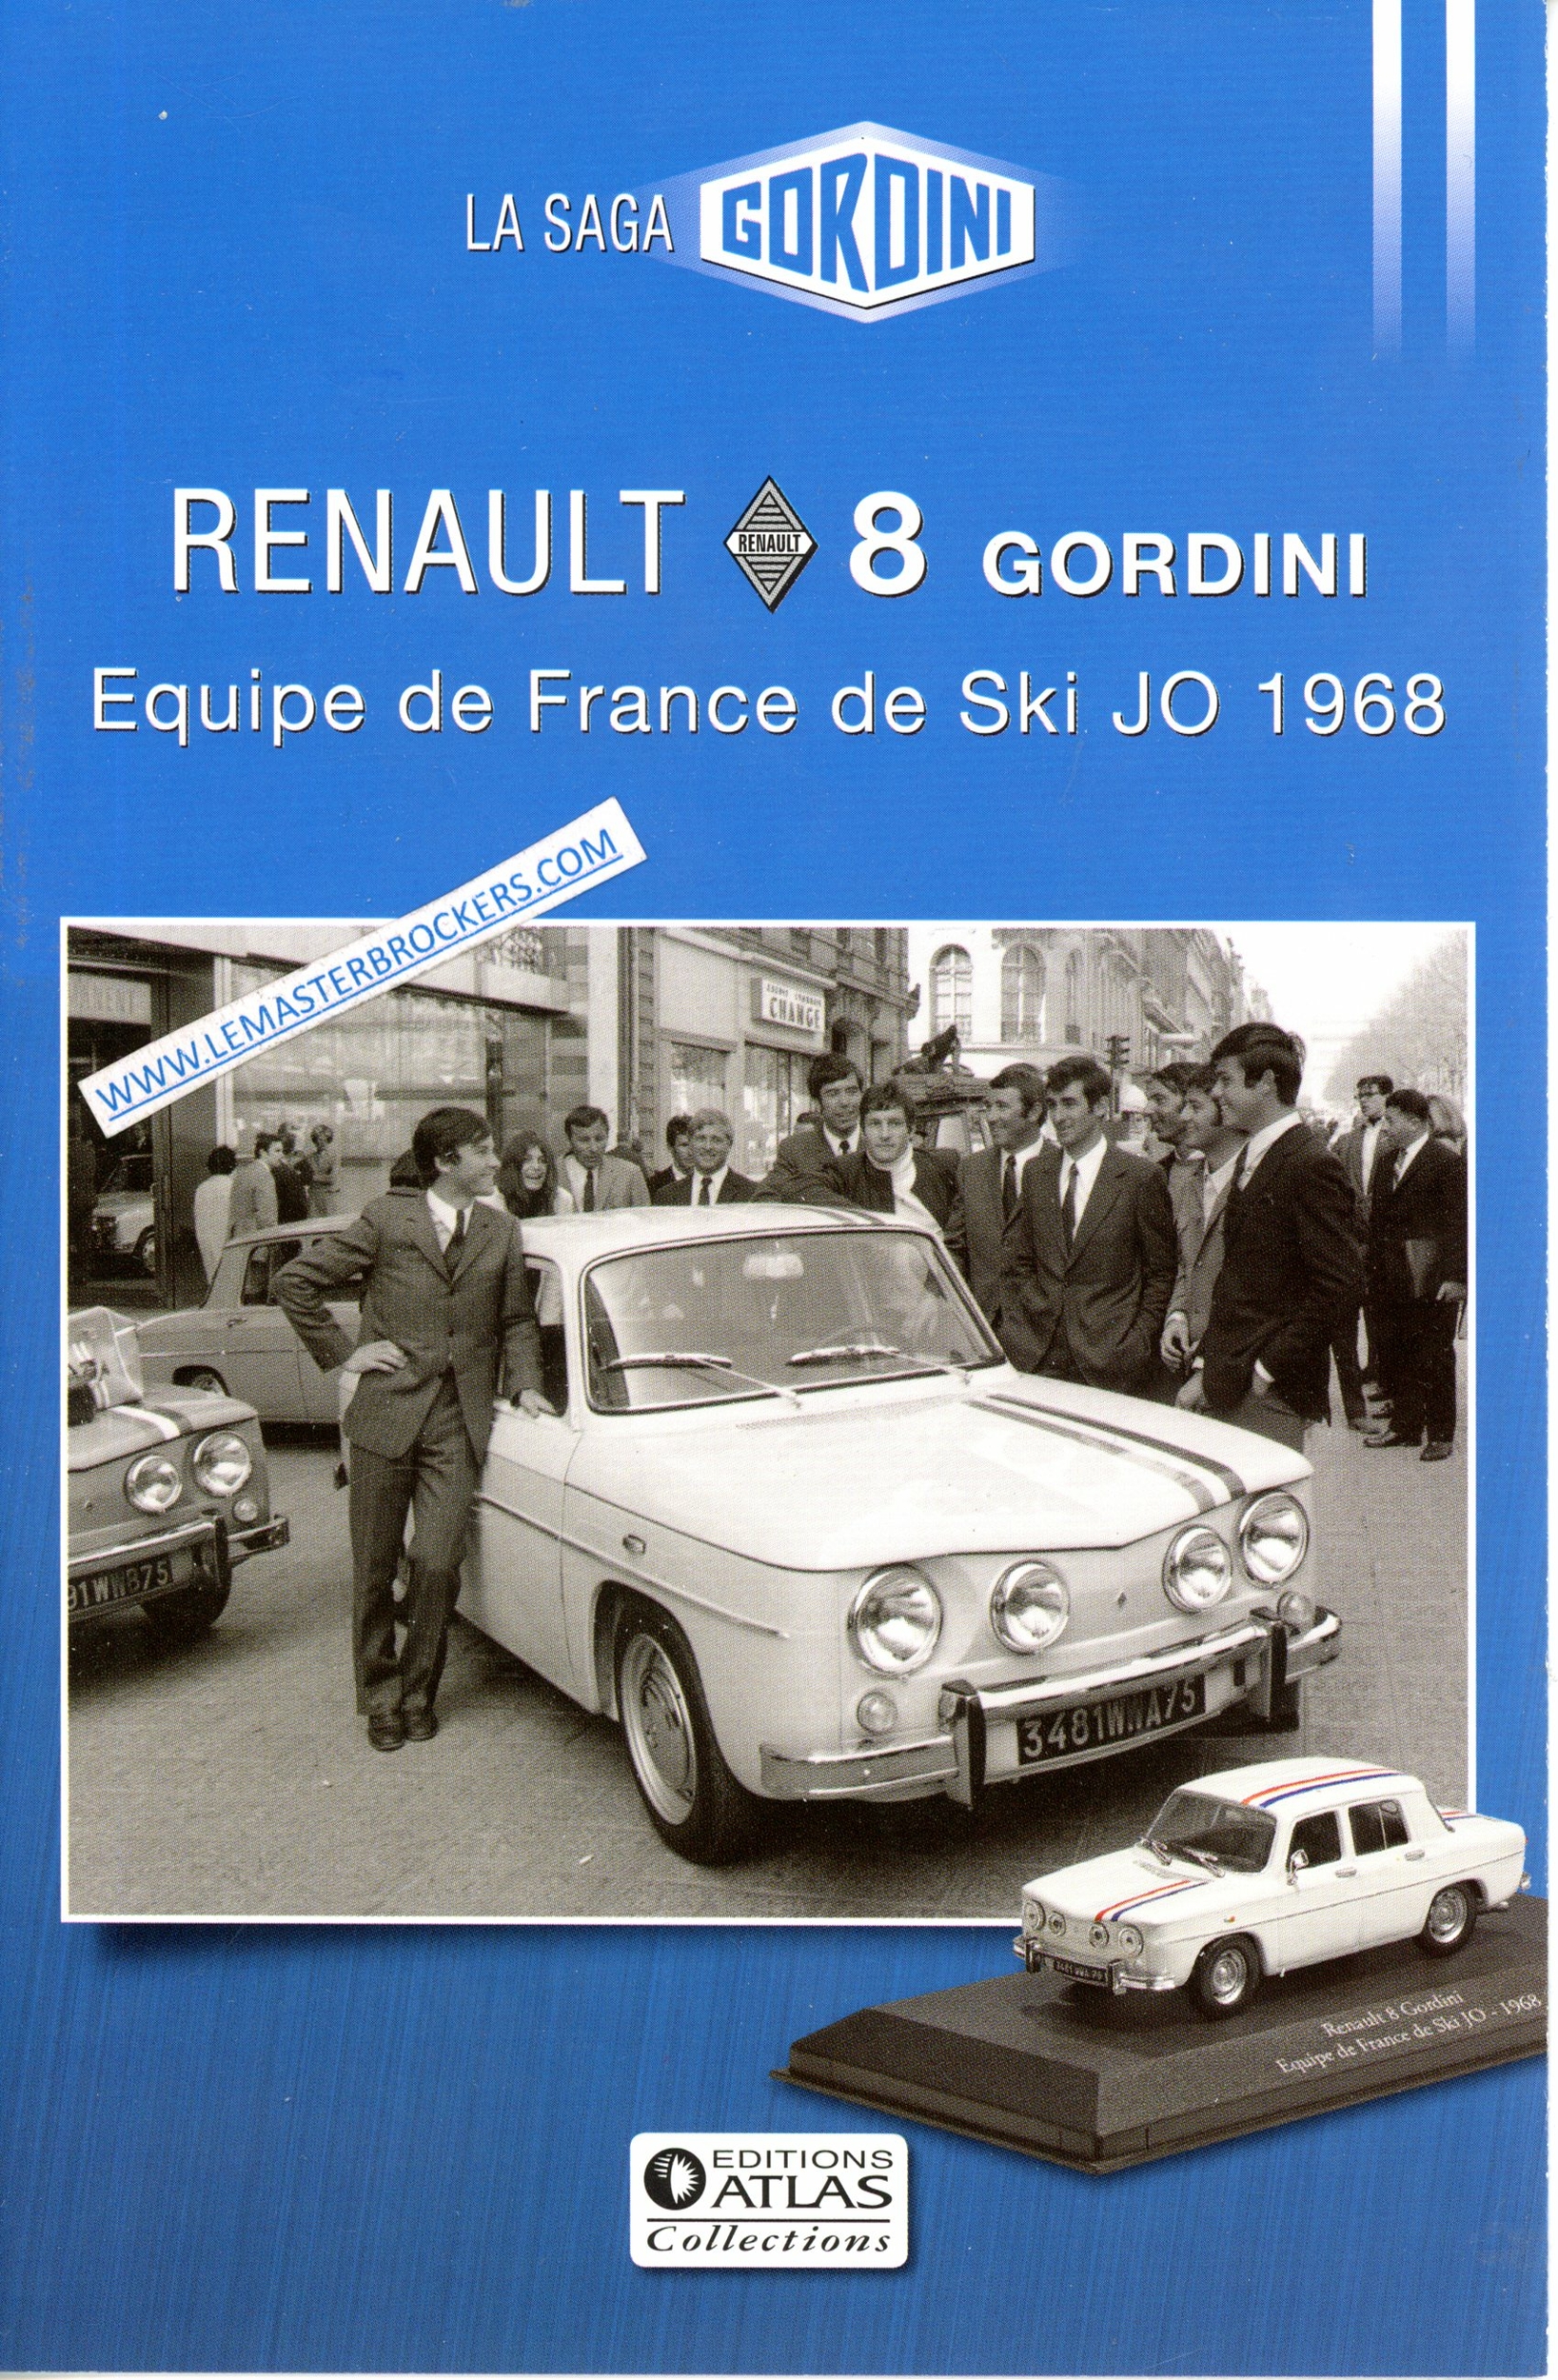 BROCHURE SAGA GORDINI R8 RENAULT 8 EQUIPE DE FRANCE DE SKI JO 1968